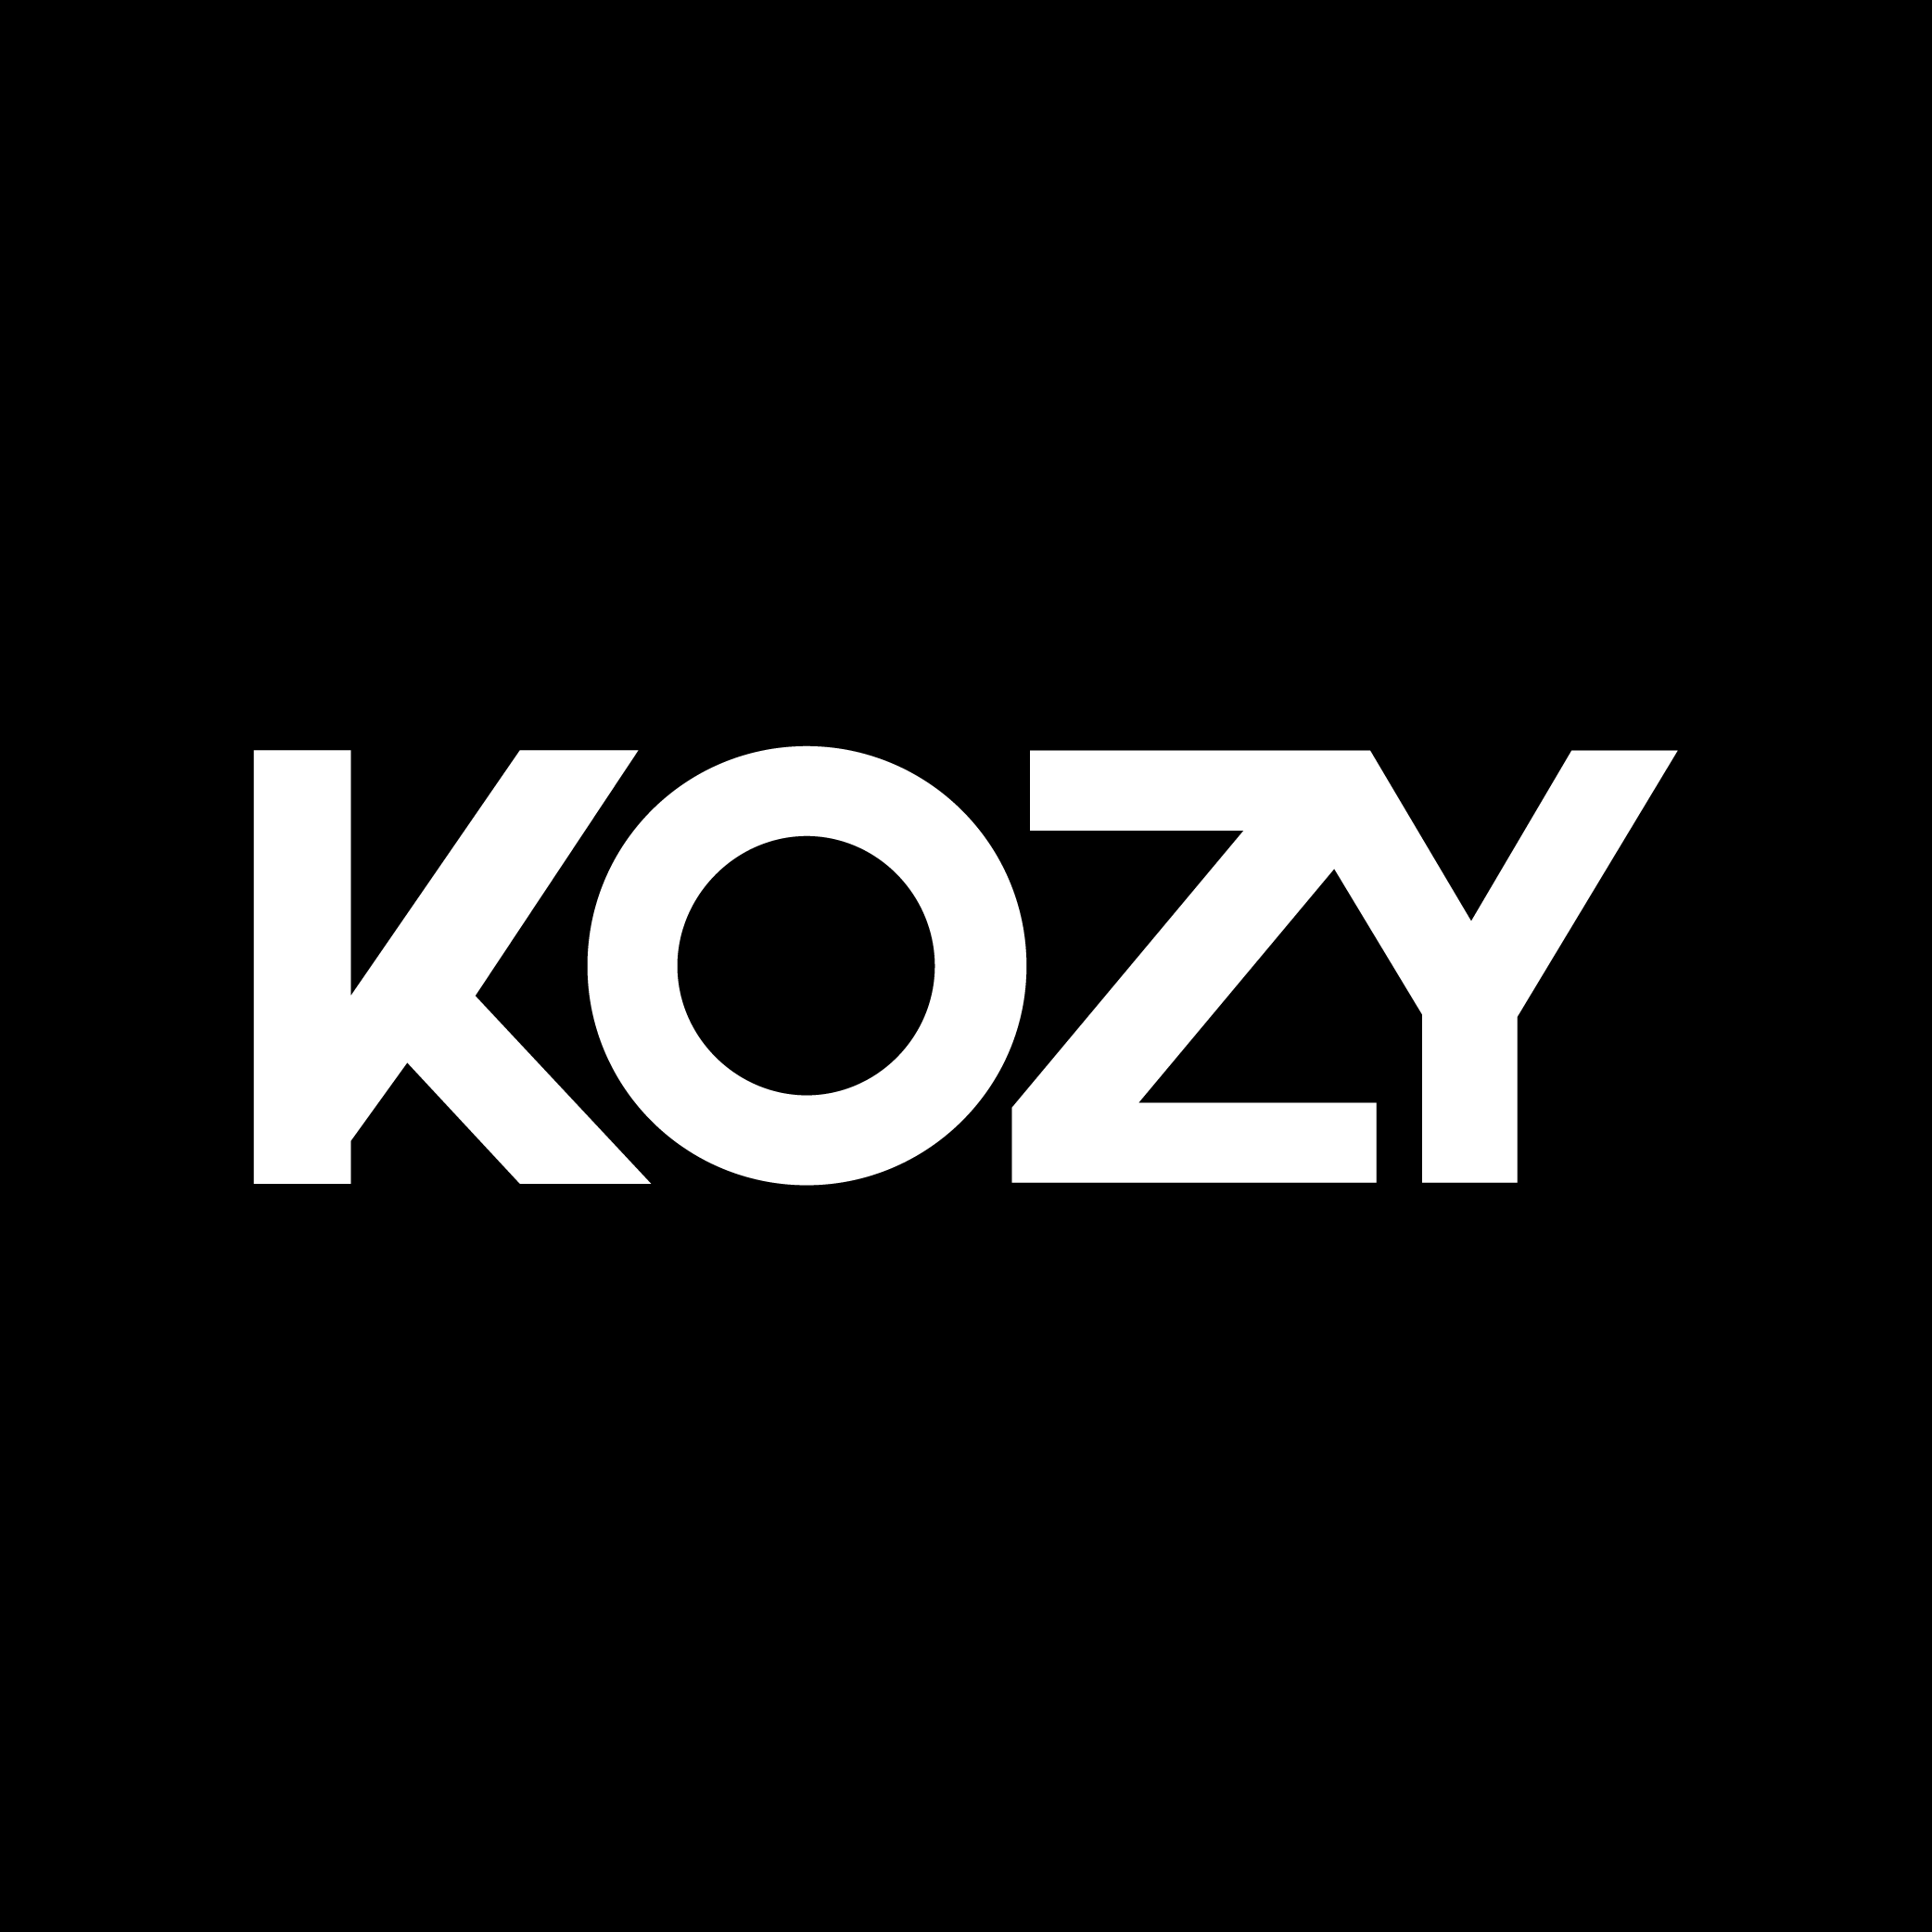 Kozy logo